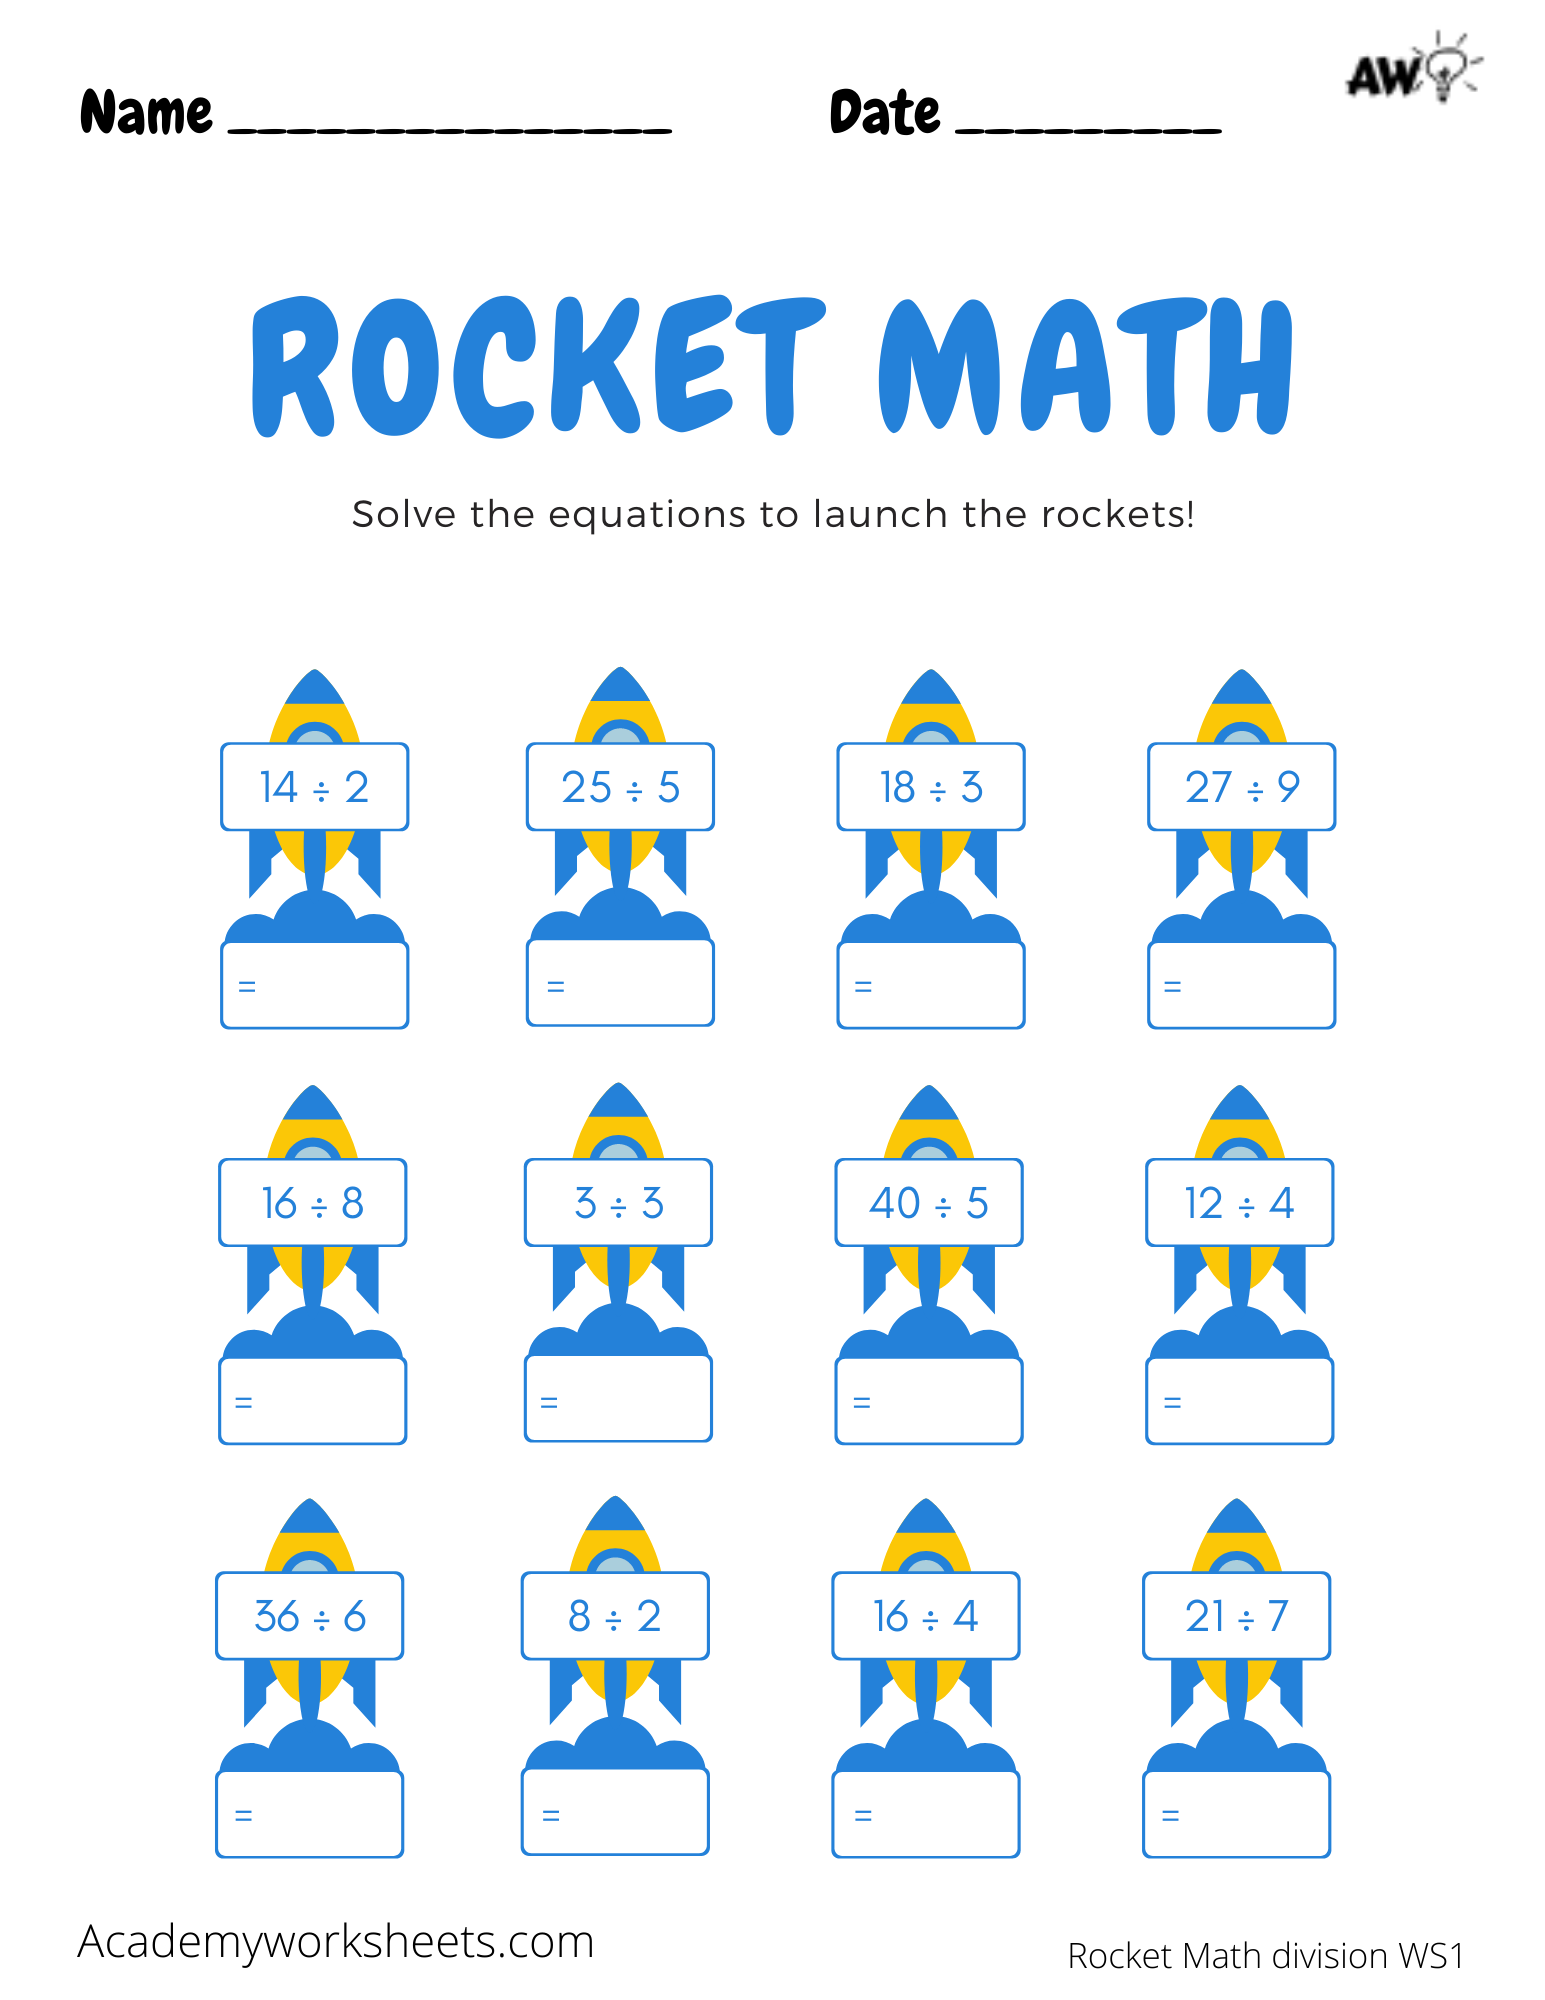 rocket-math-ms-lins-first-grade-class-free-rocket-math-worksheets-2nd-grade-with-25-best-ideas